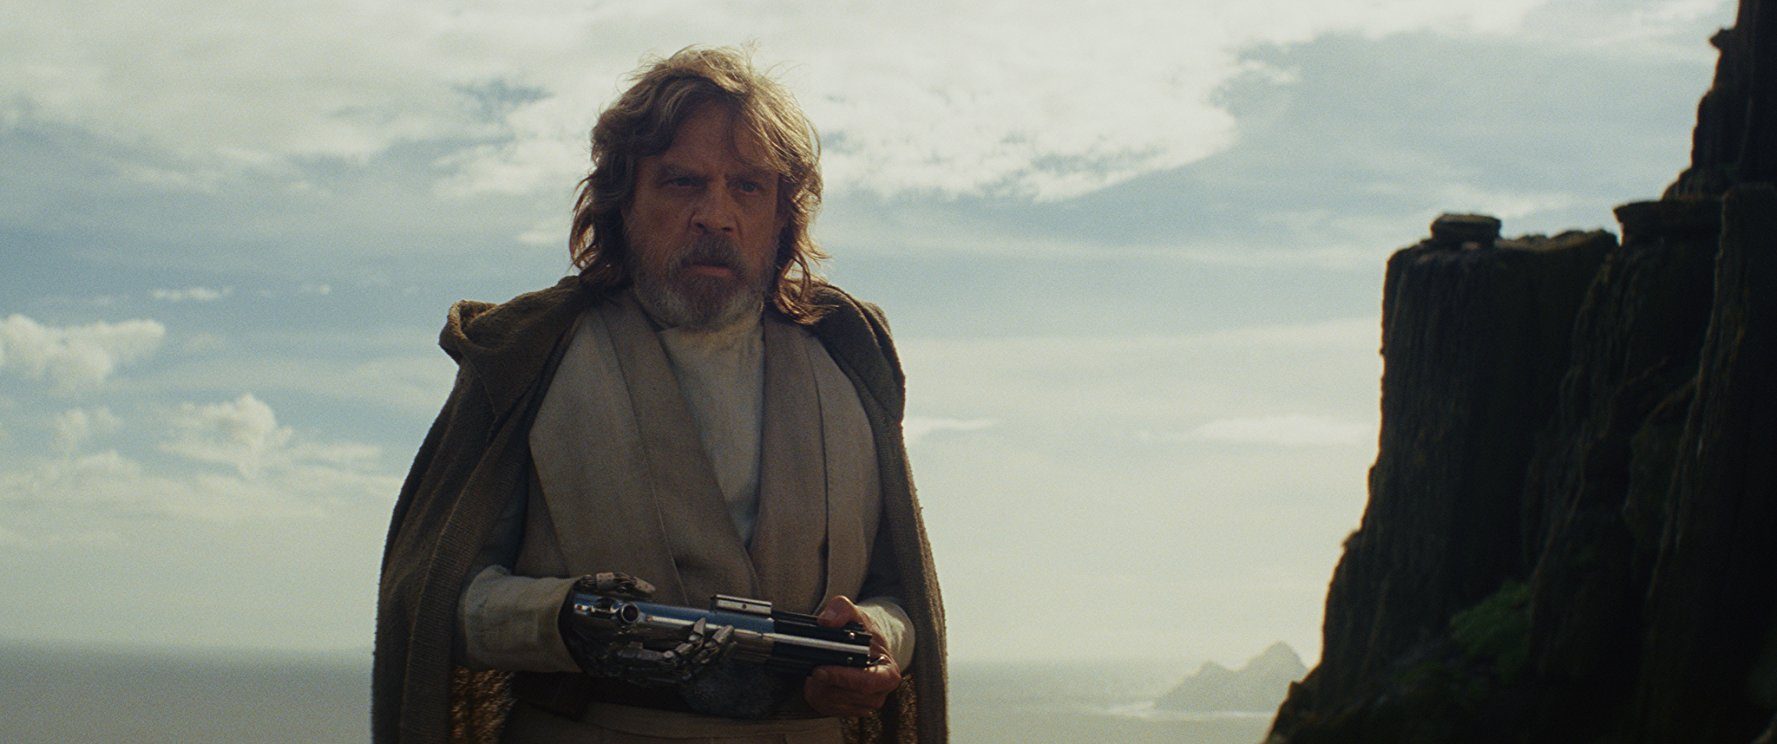 Luke Skywalker in 'Star Wars: The Last Jedi' holding a lightsaber